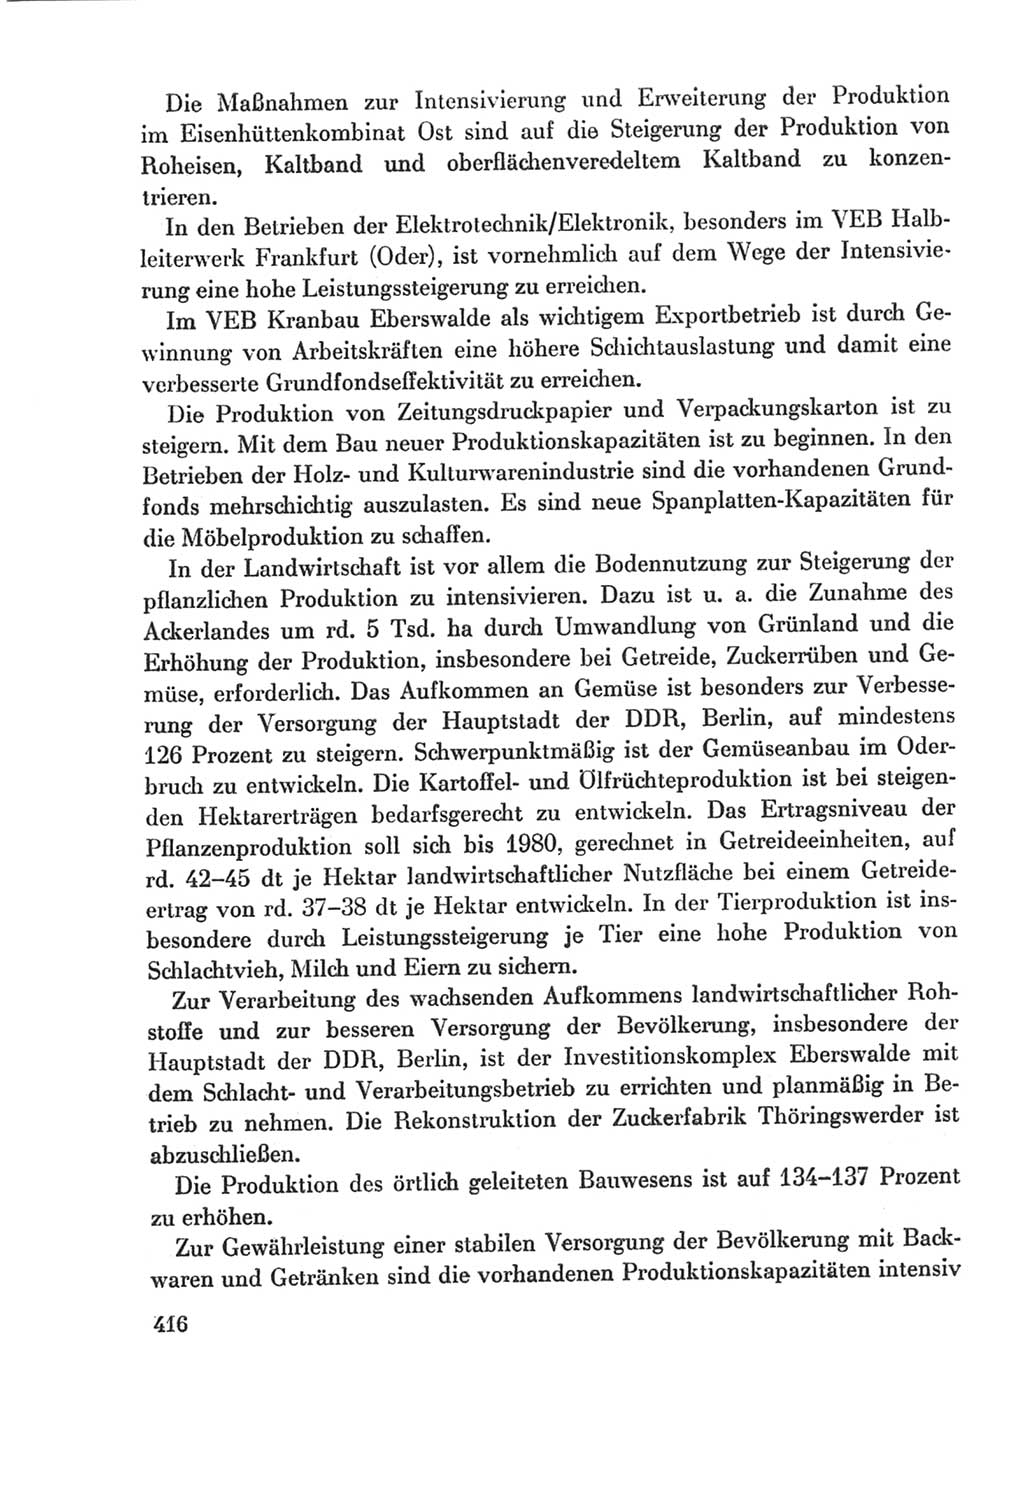 Protokoll der Verhandlungen des Ⅸ. Parteitages der Sozialistischen Einheitspartei Deutschlands (SED) [Deutsche Demokratische Republik (DDR)] 1976, Band 2, Seite 416 (Prot. Verh. Ⅸ. PT SED DDR 1976, Bd. 2, S. 416)